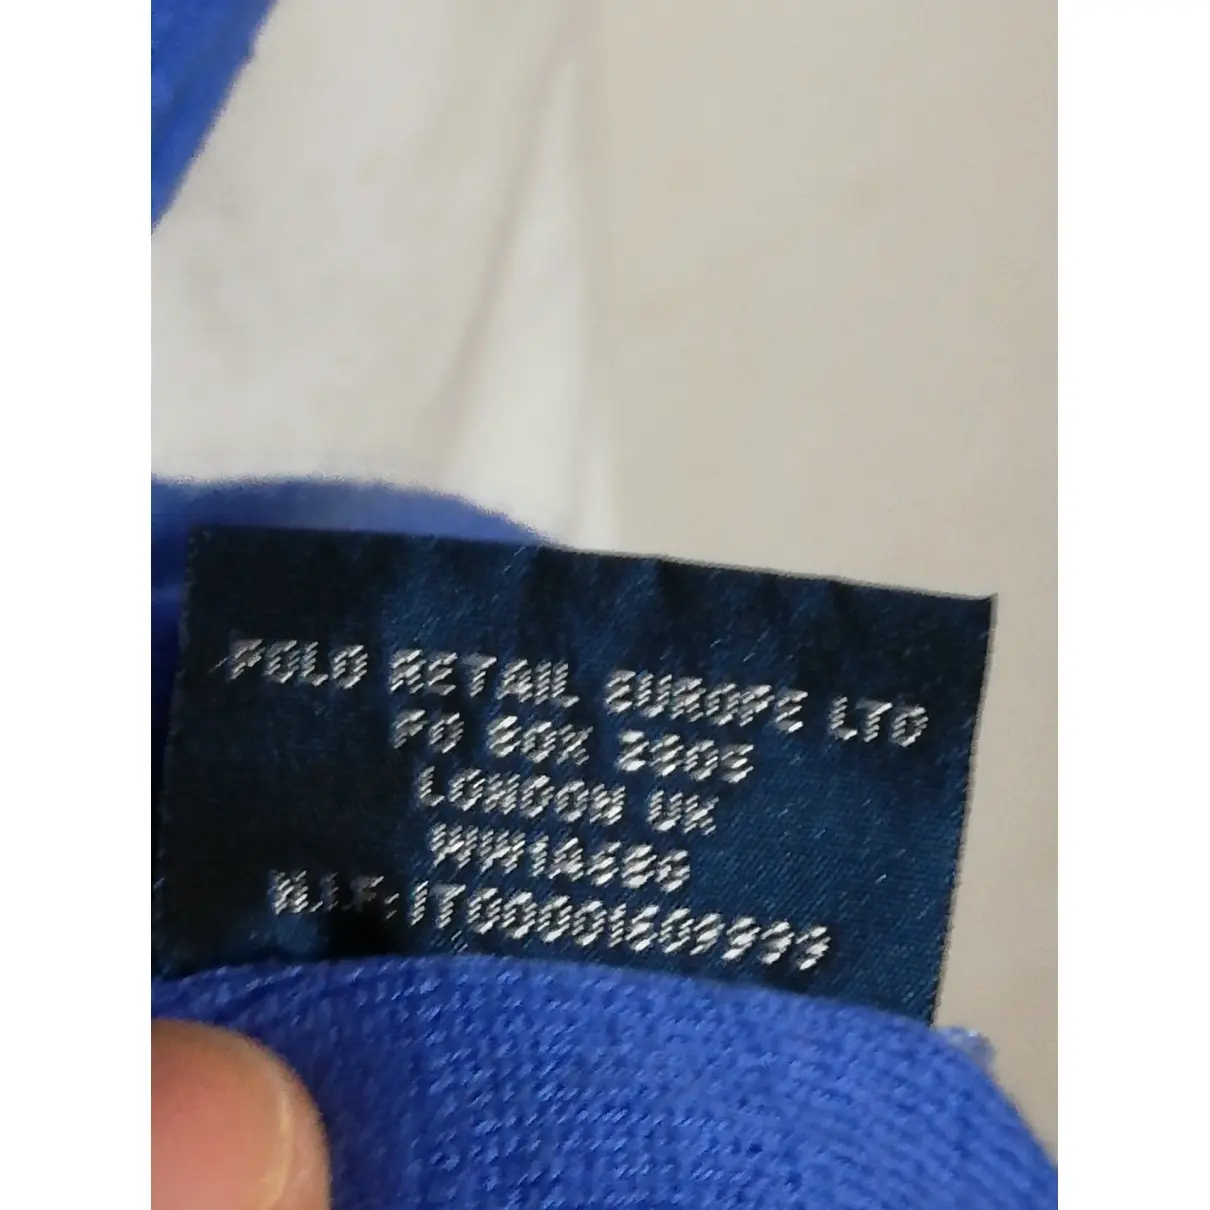 Blue Cotton Knitwear & Sweatshirt Polo Ralph Lauren